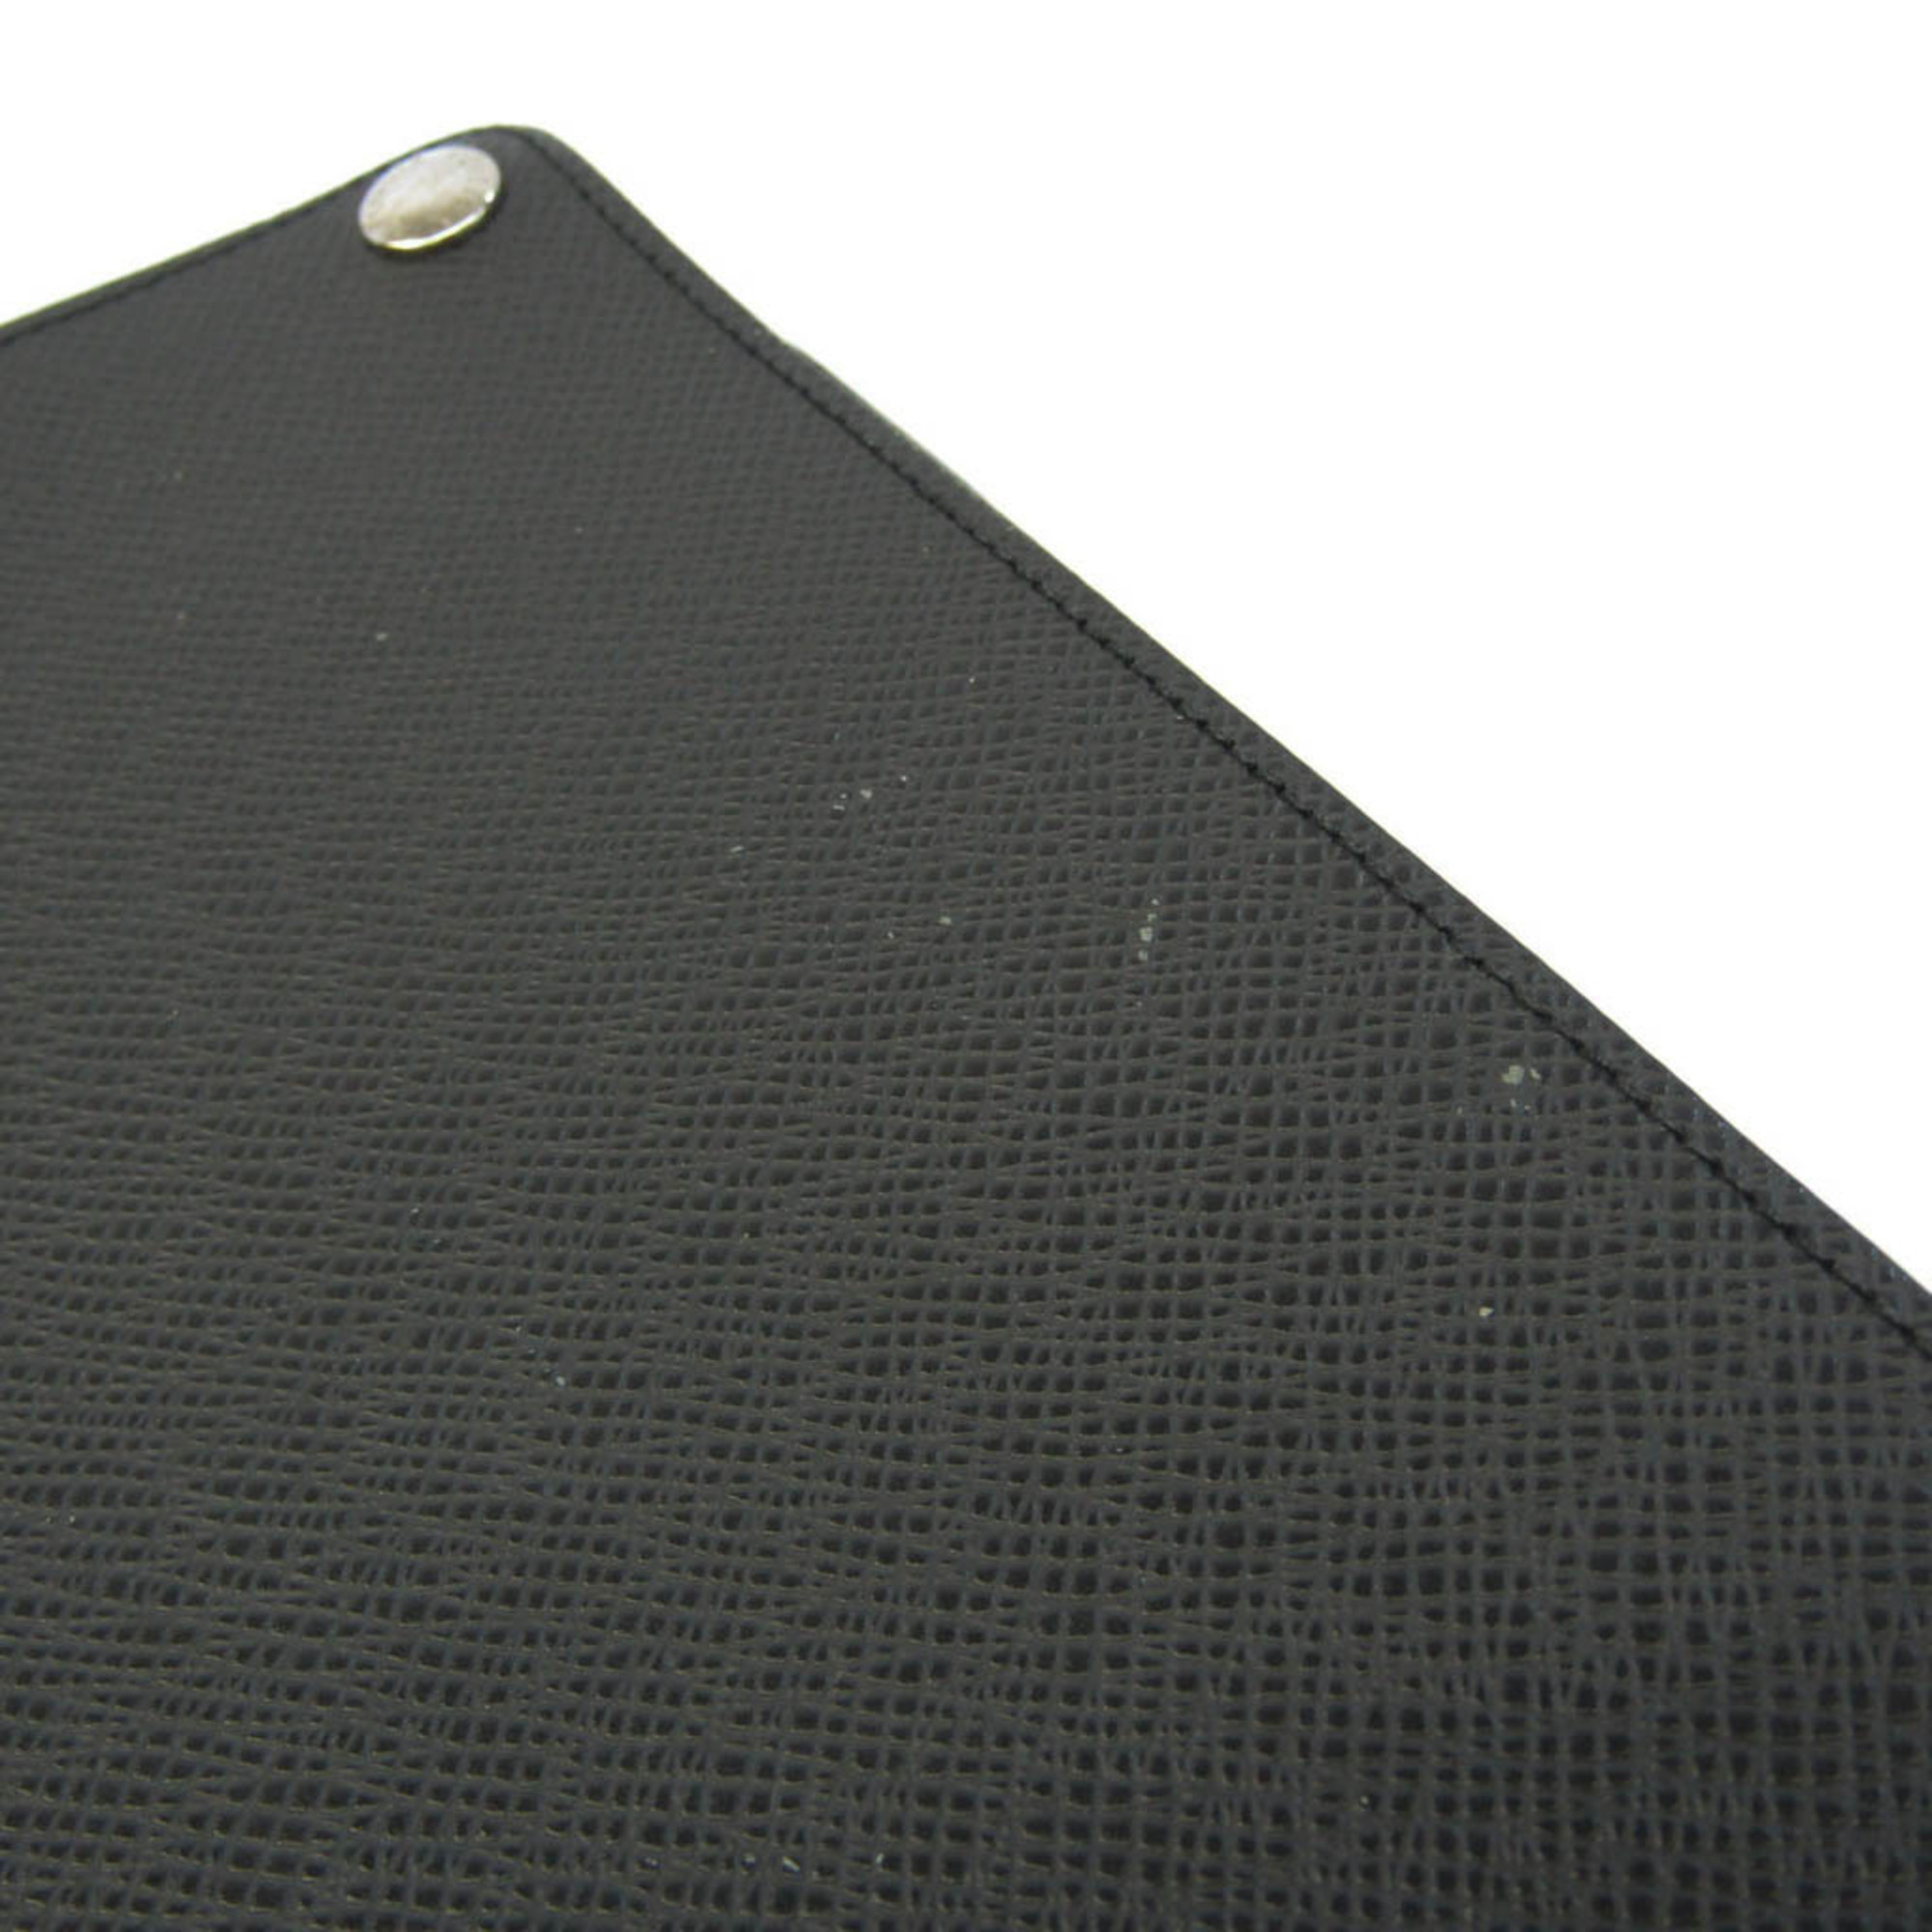 ルイ・ヴィトン(Louis Vuitton) タイガ スタンド機能付きケース iPad 対応 アルドワーズ エテュイ ipad M93804